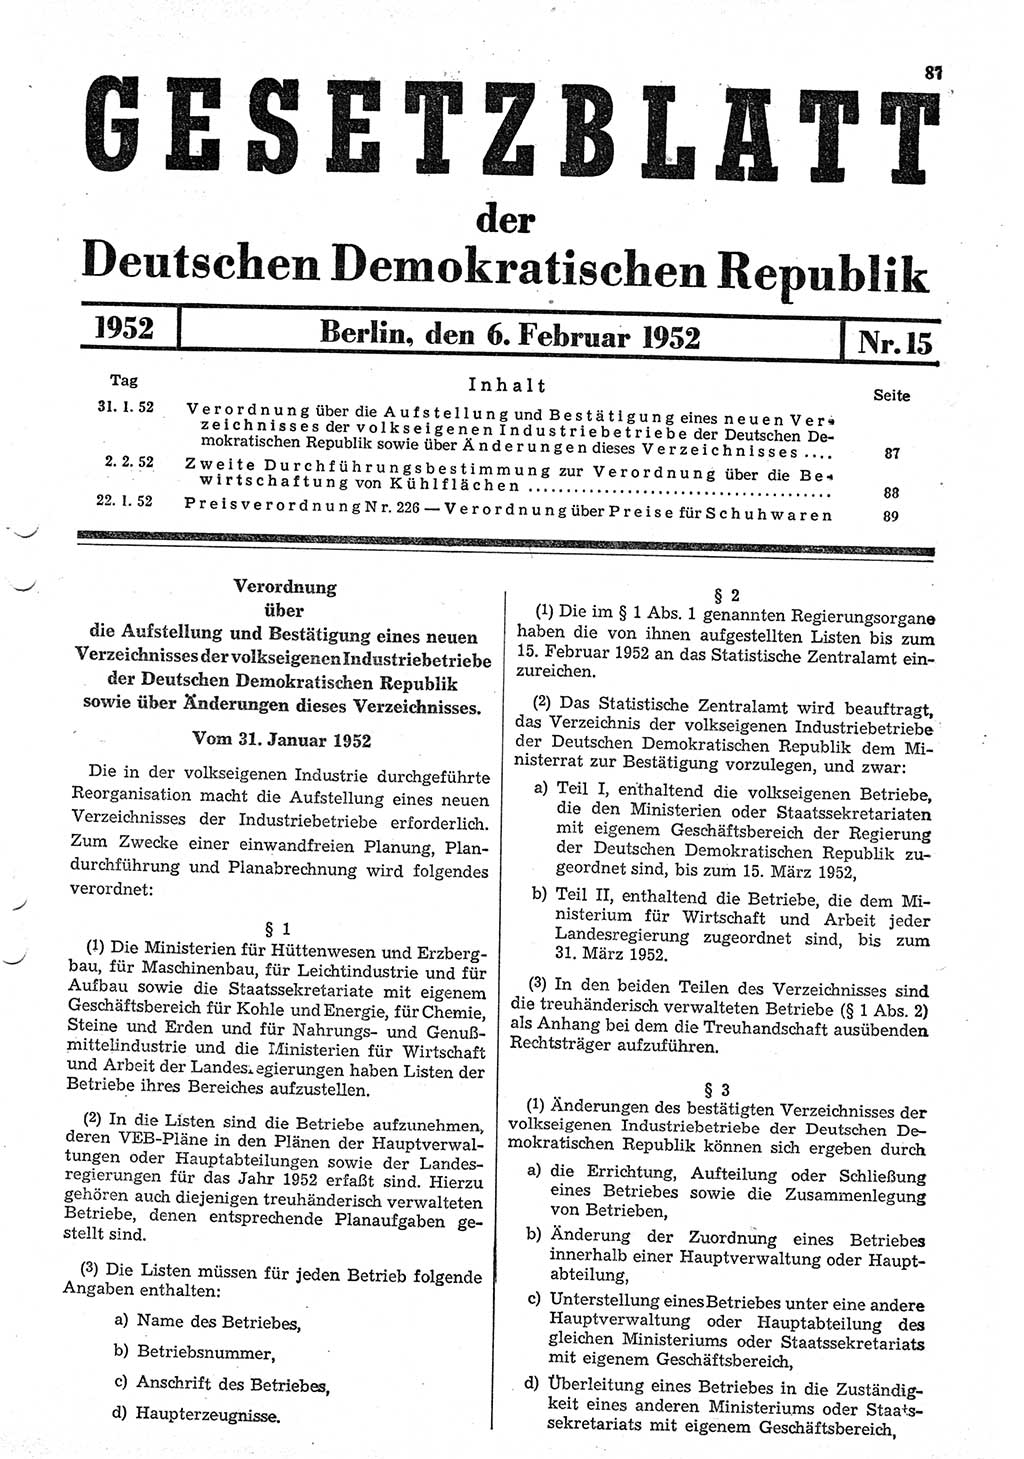 Gesetzblatt (GBl.) der Deutschen Demokratischen Republik (DDR) 1952, Seite 87 (GBl. DDR 1952, S. 87)